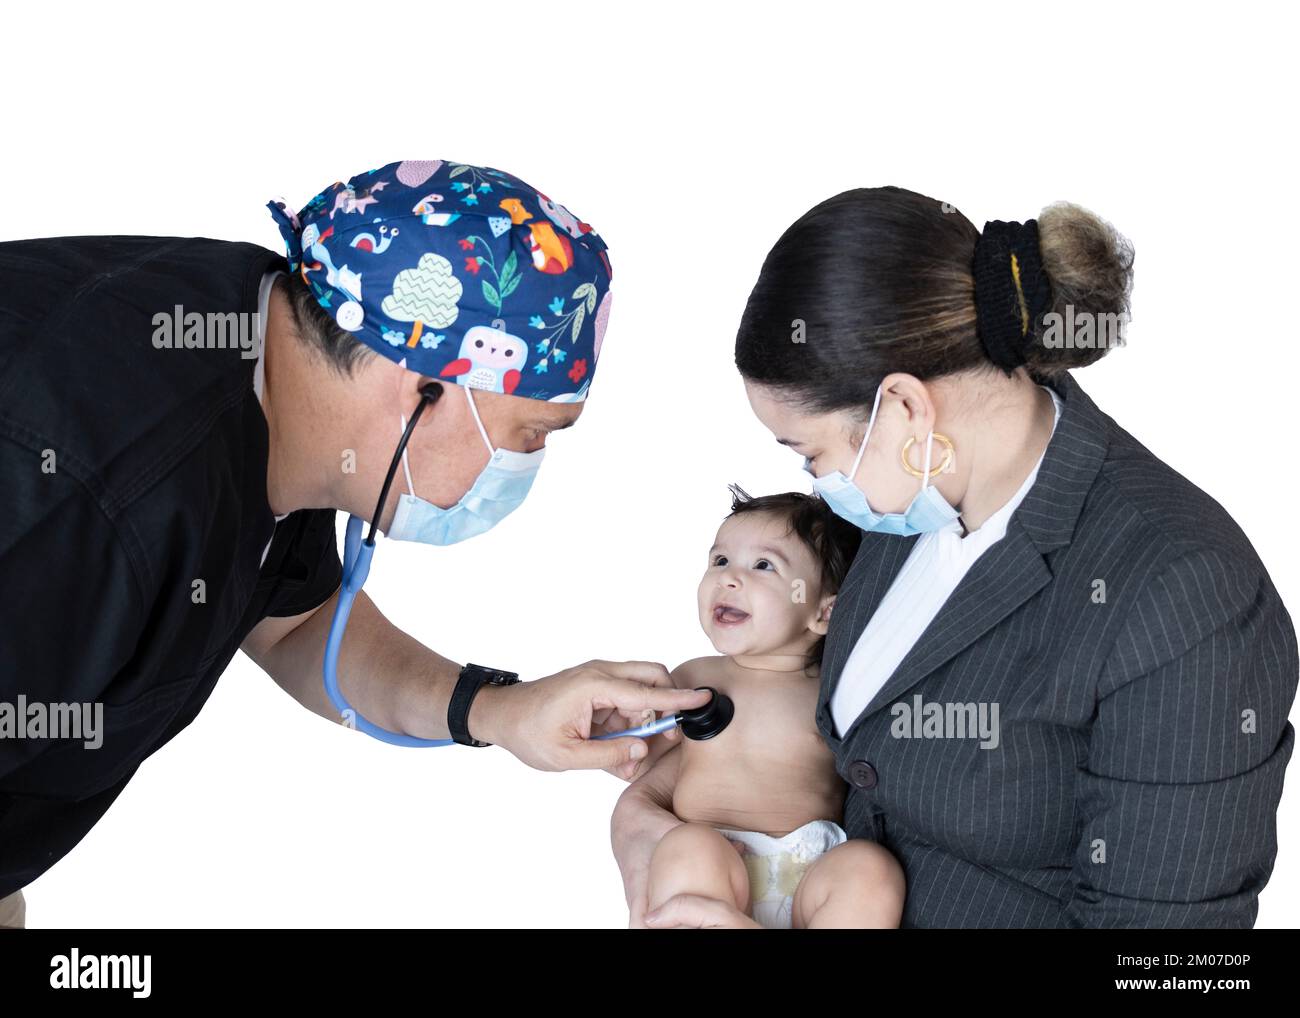 Consultazione con il pediatra di un bambino accompagnato dal seno, il bambino mostra un sorriso prima del medico durante il suo esame fisico. Foto Stock